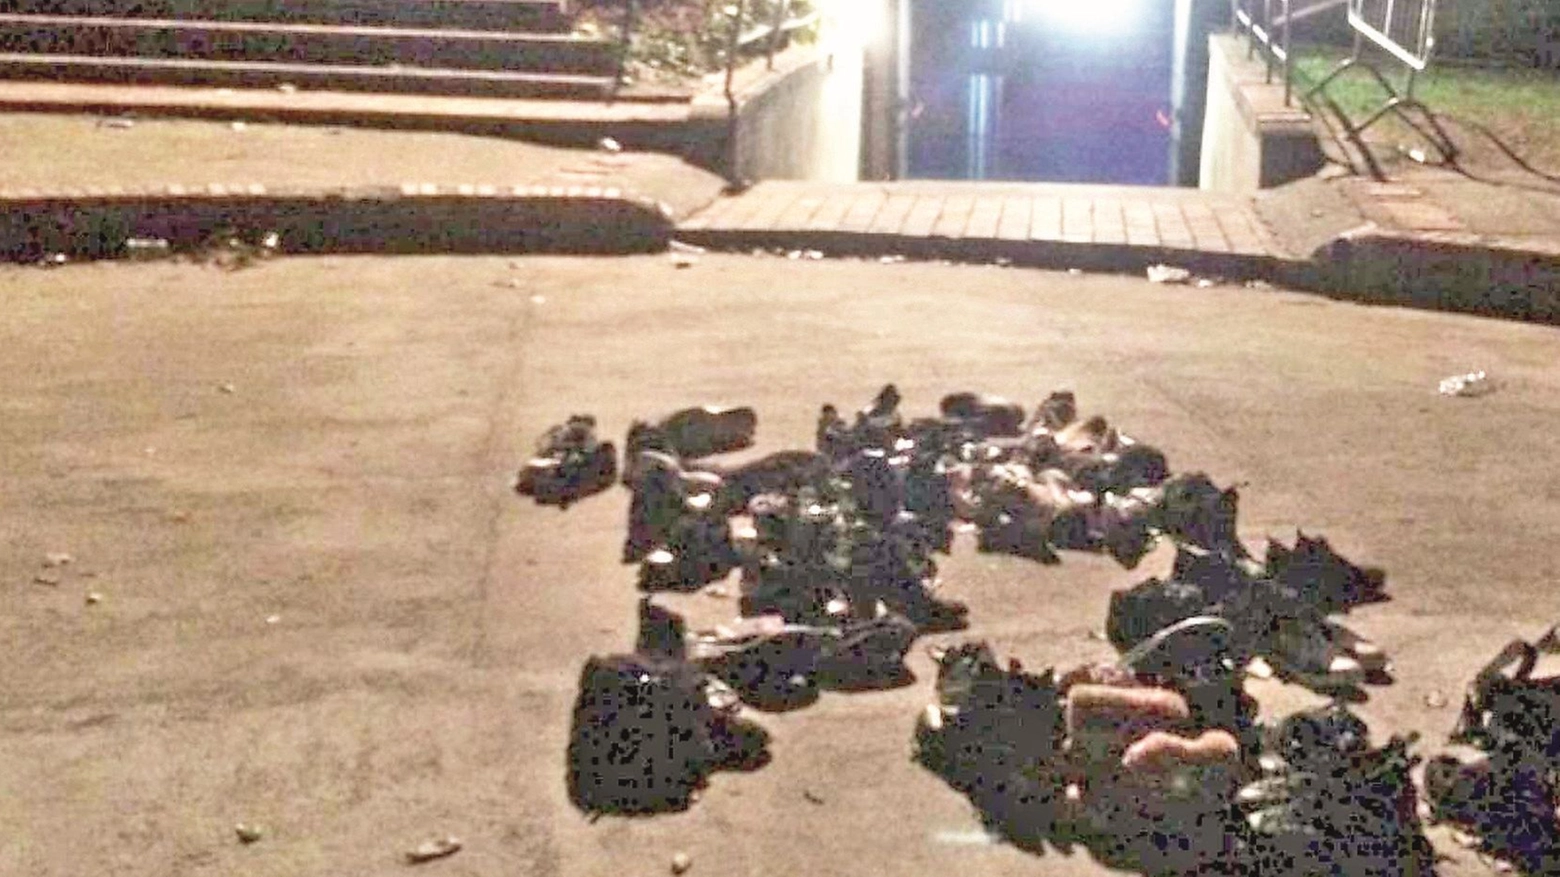 Un’immagine agghiacciante: le scarpe perse dai ragazzi nella fuga dalla discoteca